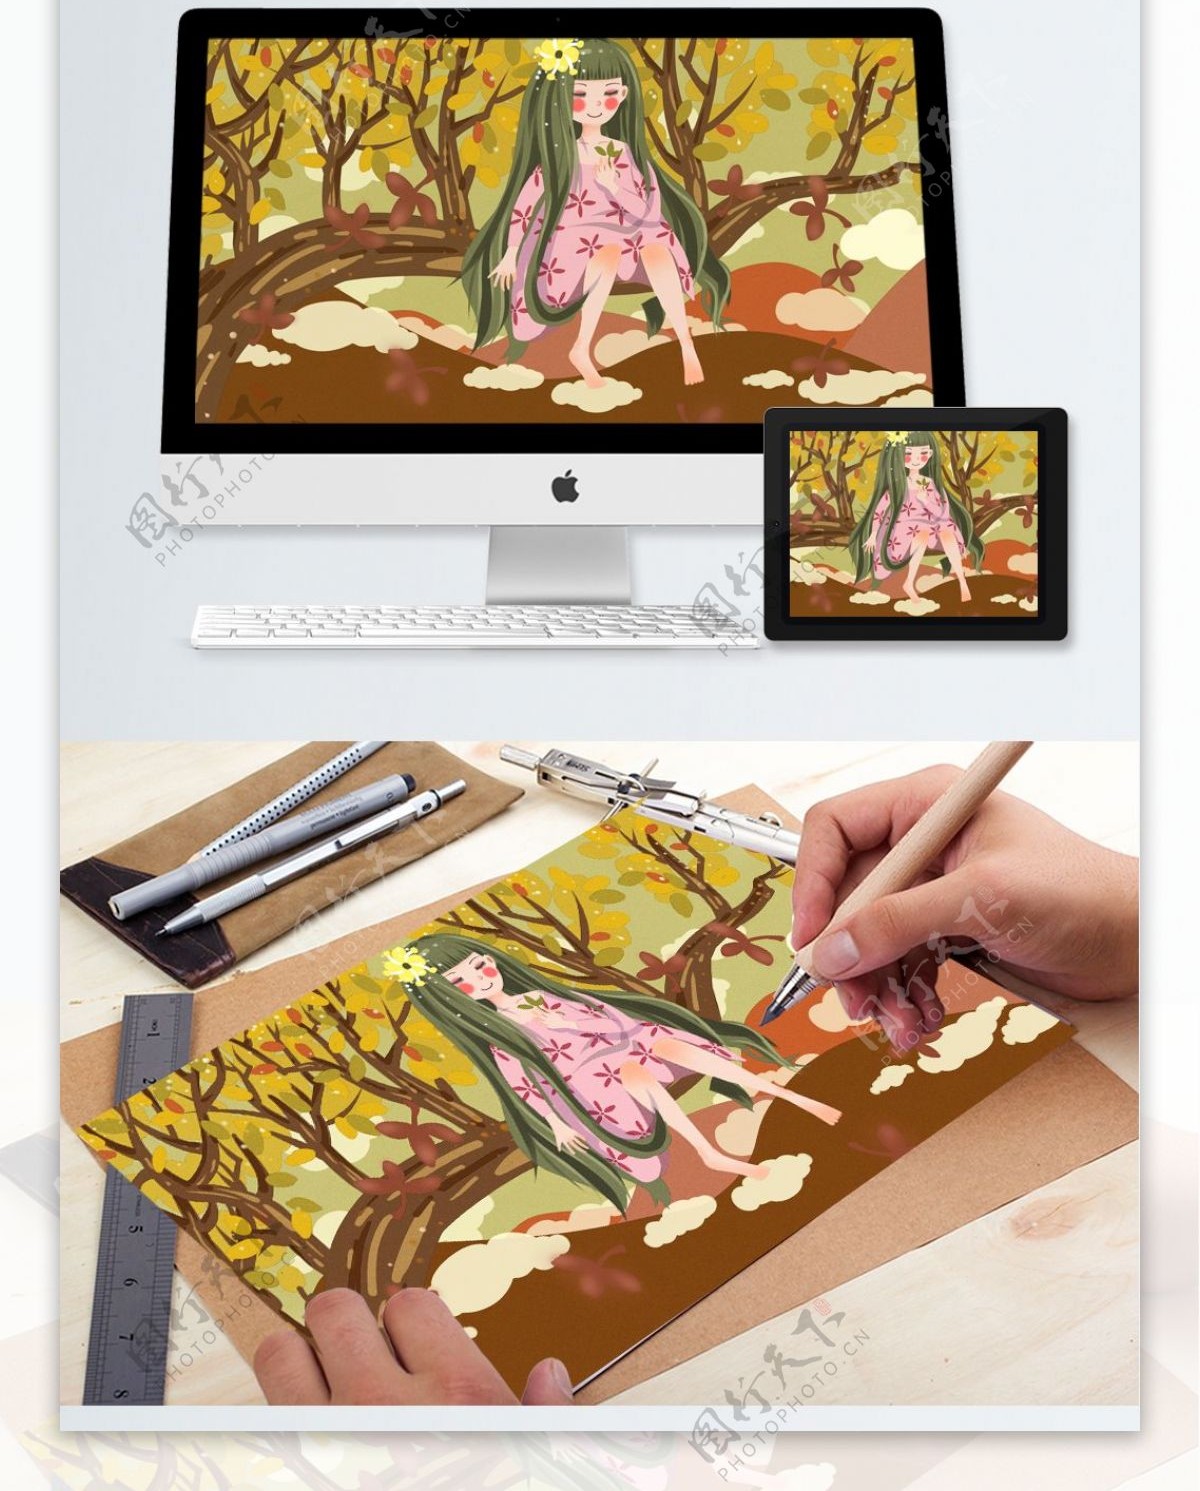 秋渐凉念悠长坐在树上玩叶子的女孩清新插画